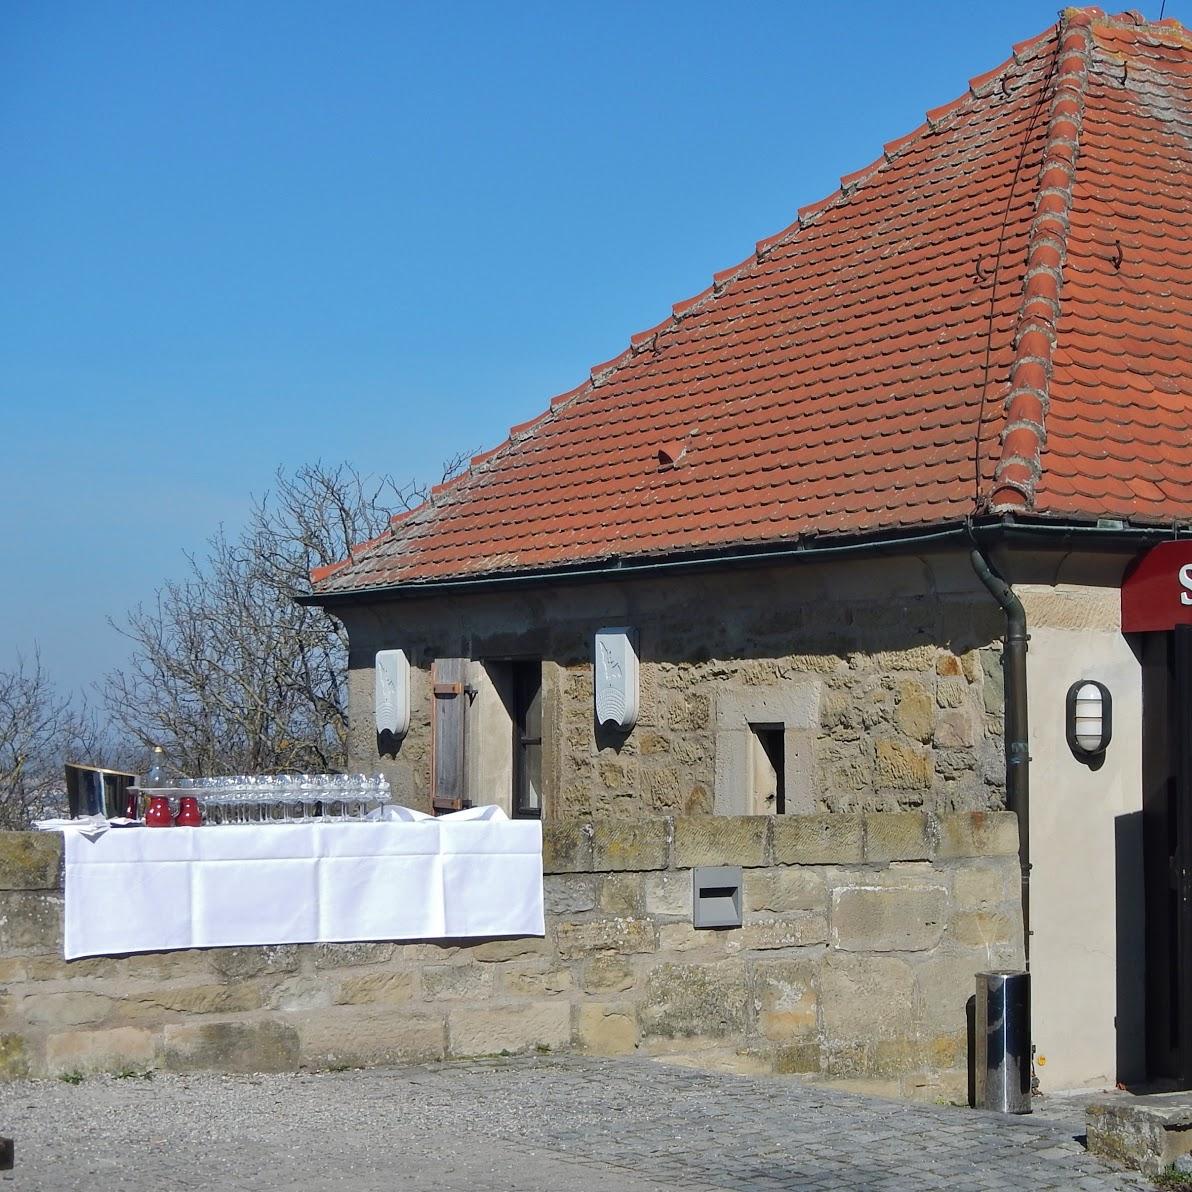 Restaurant "Schubart Stube" in  Asperg